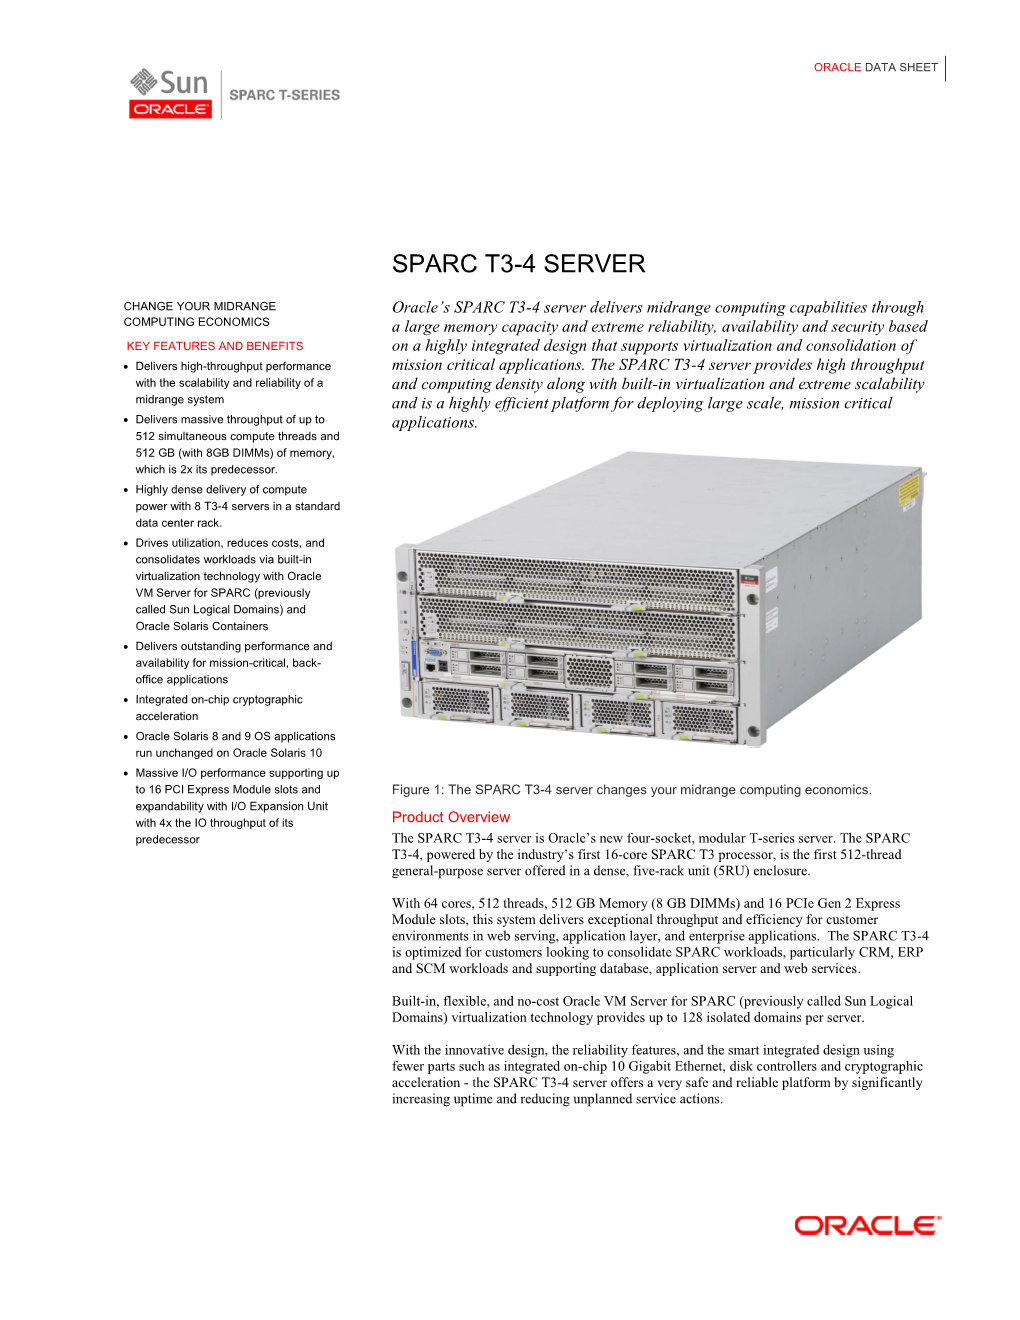 SPARC T3-4 Data Sheet